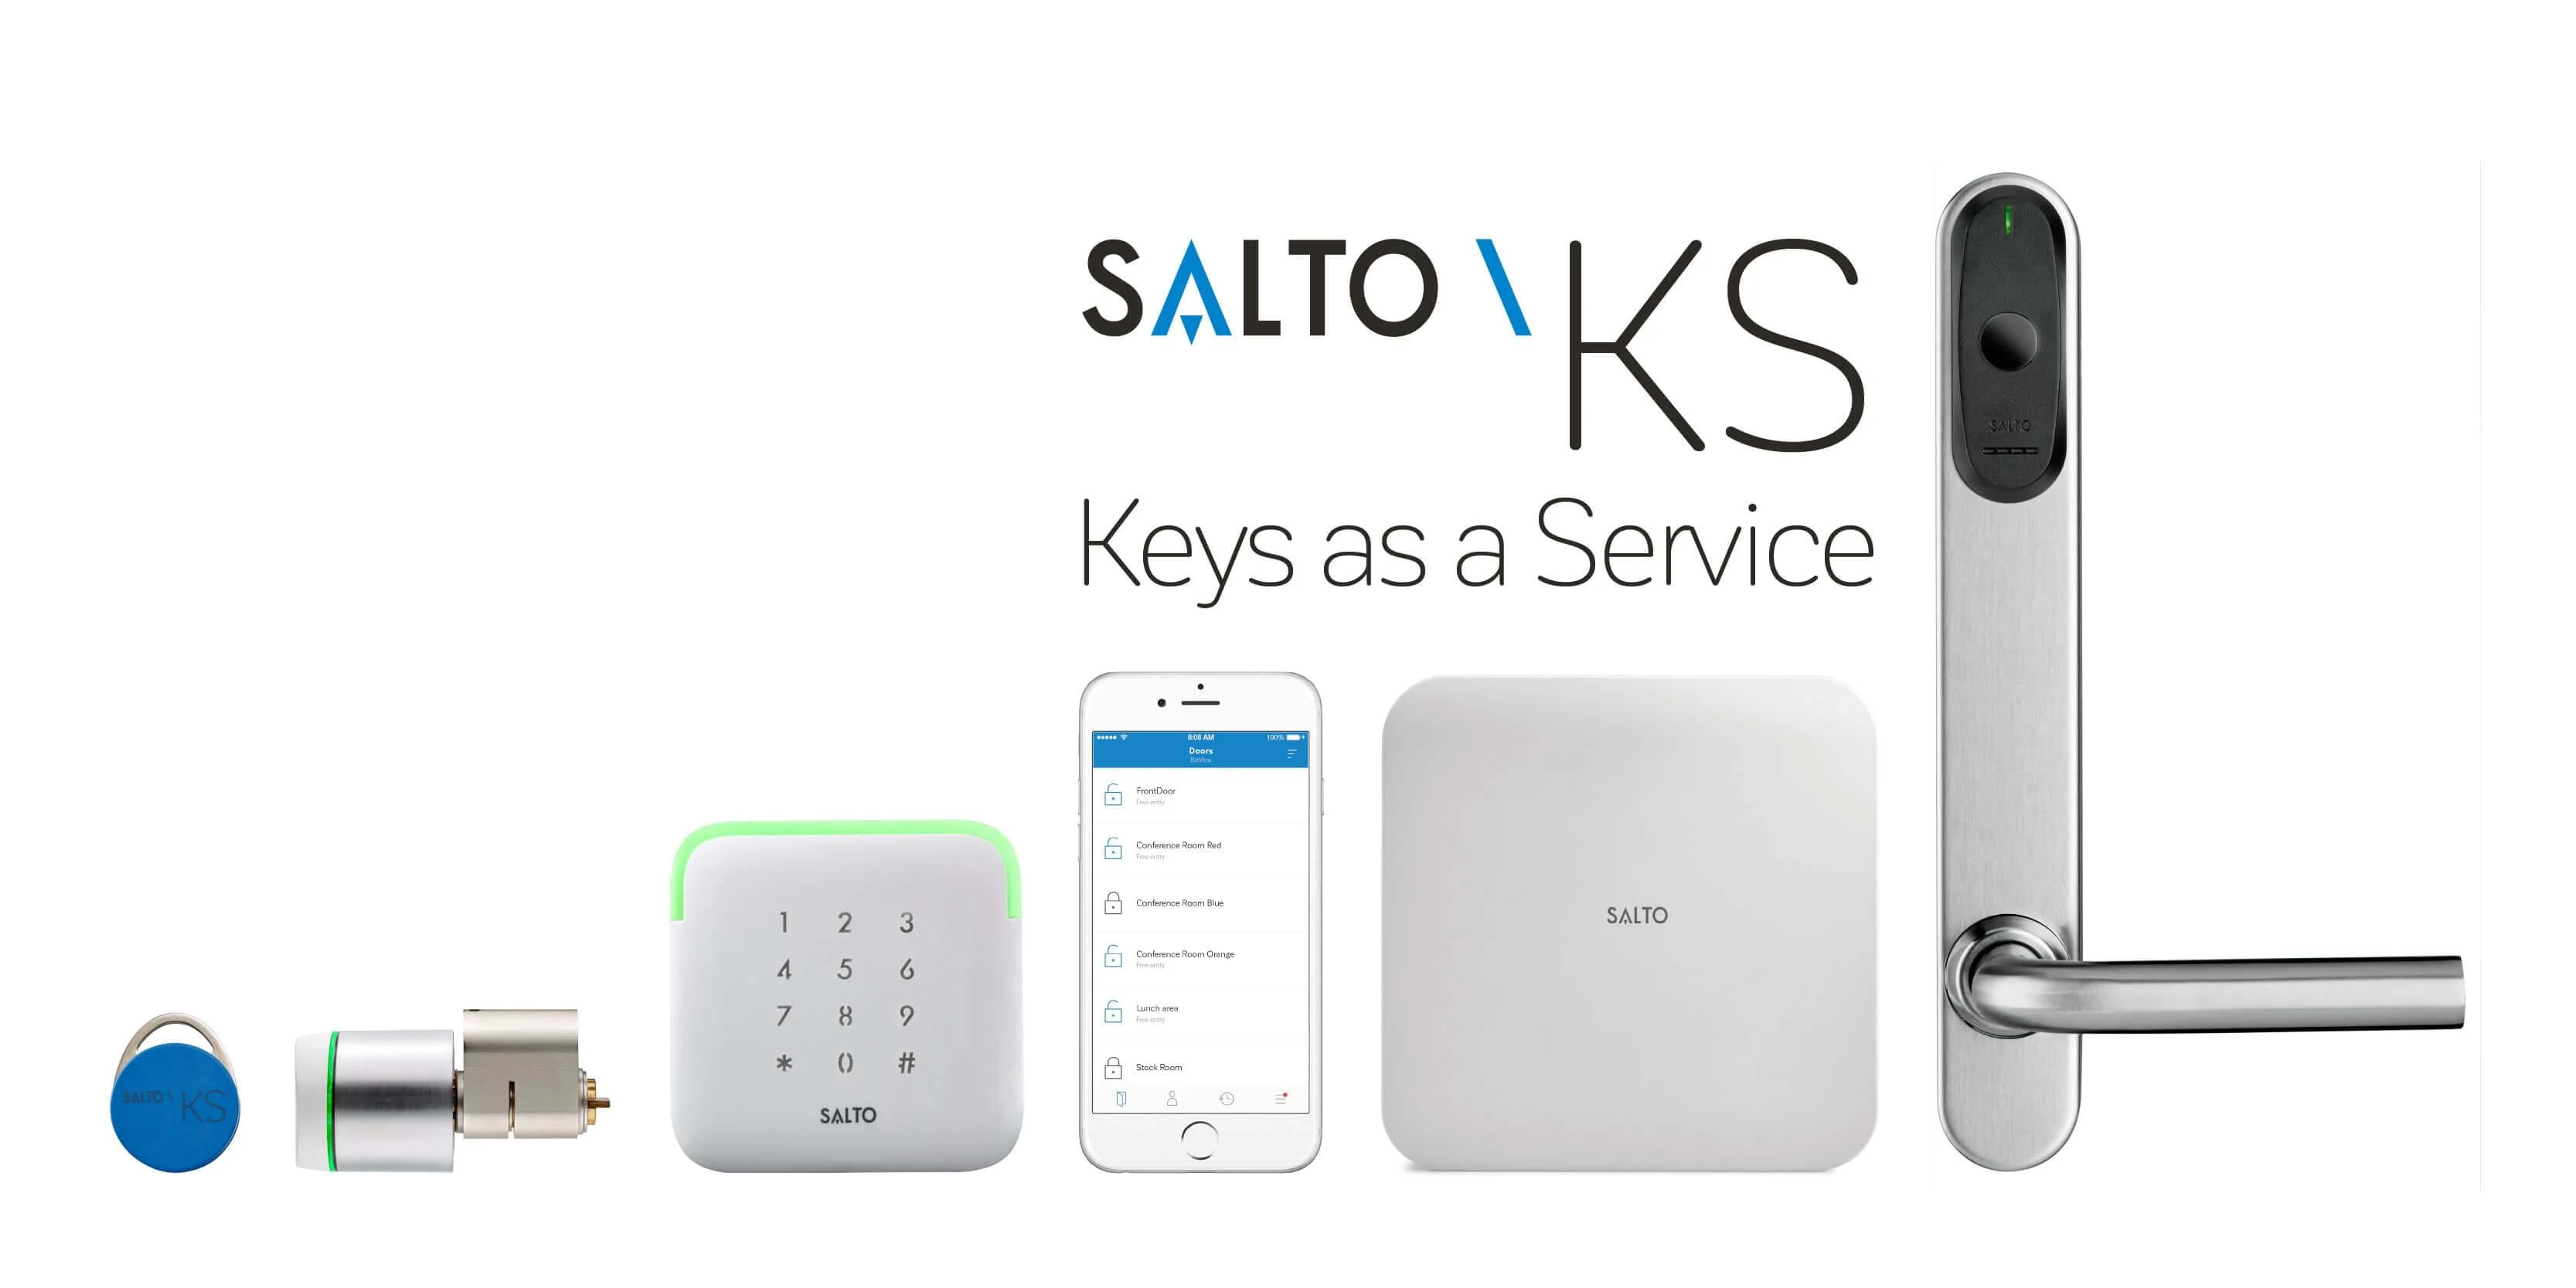 Salto KS Geçiş Kontrol Sistemi ve Nexudus Paylaşımlı Ofis Yönetim Yazılımı entegrasyonu paylaşımlı ofislerin işletme süreçlerine nasıl yardımcı olur?